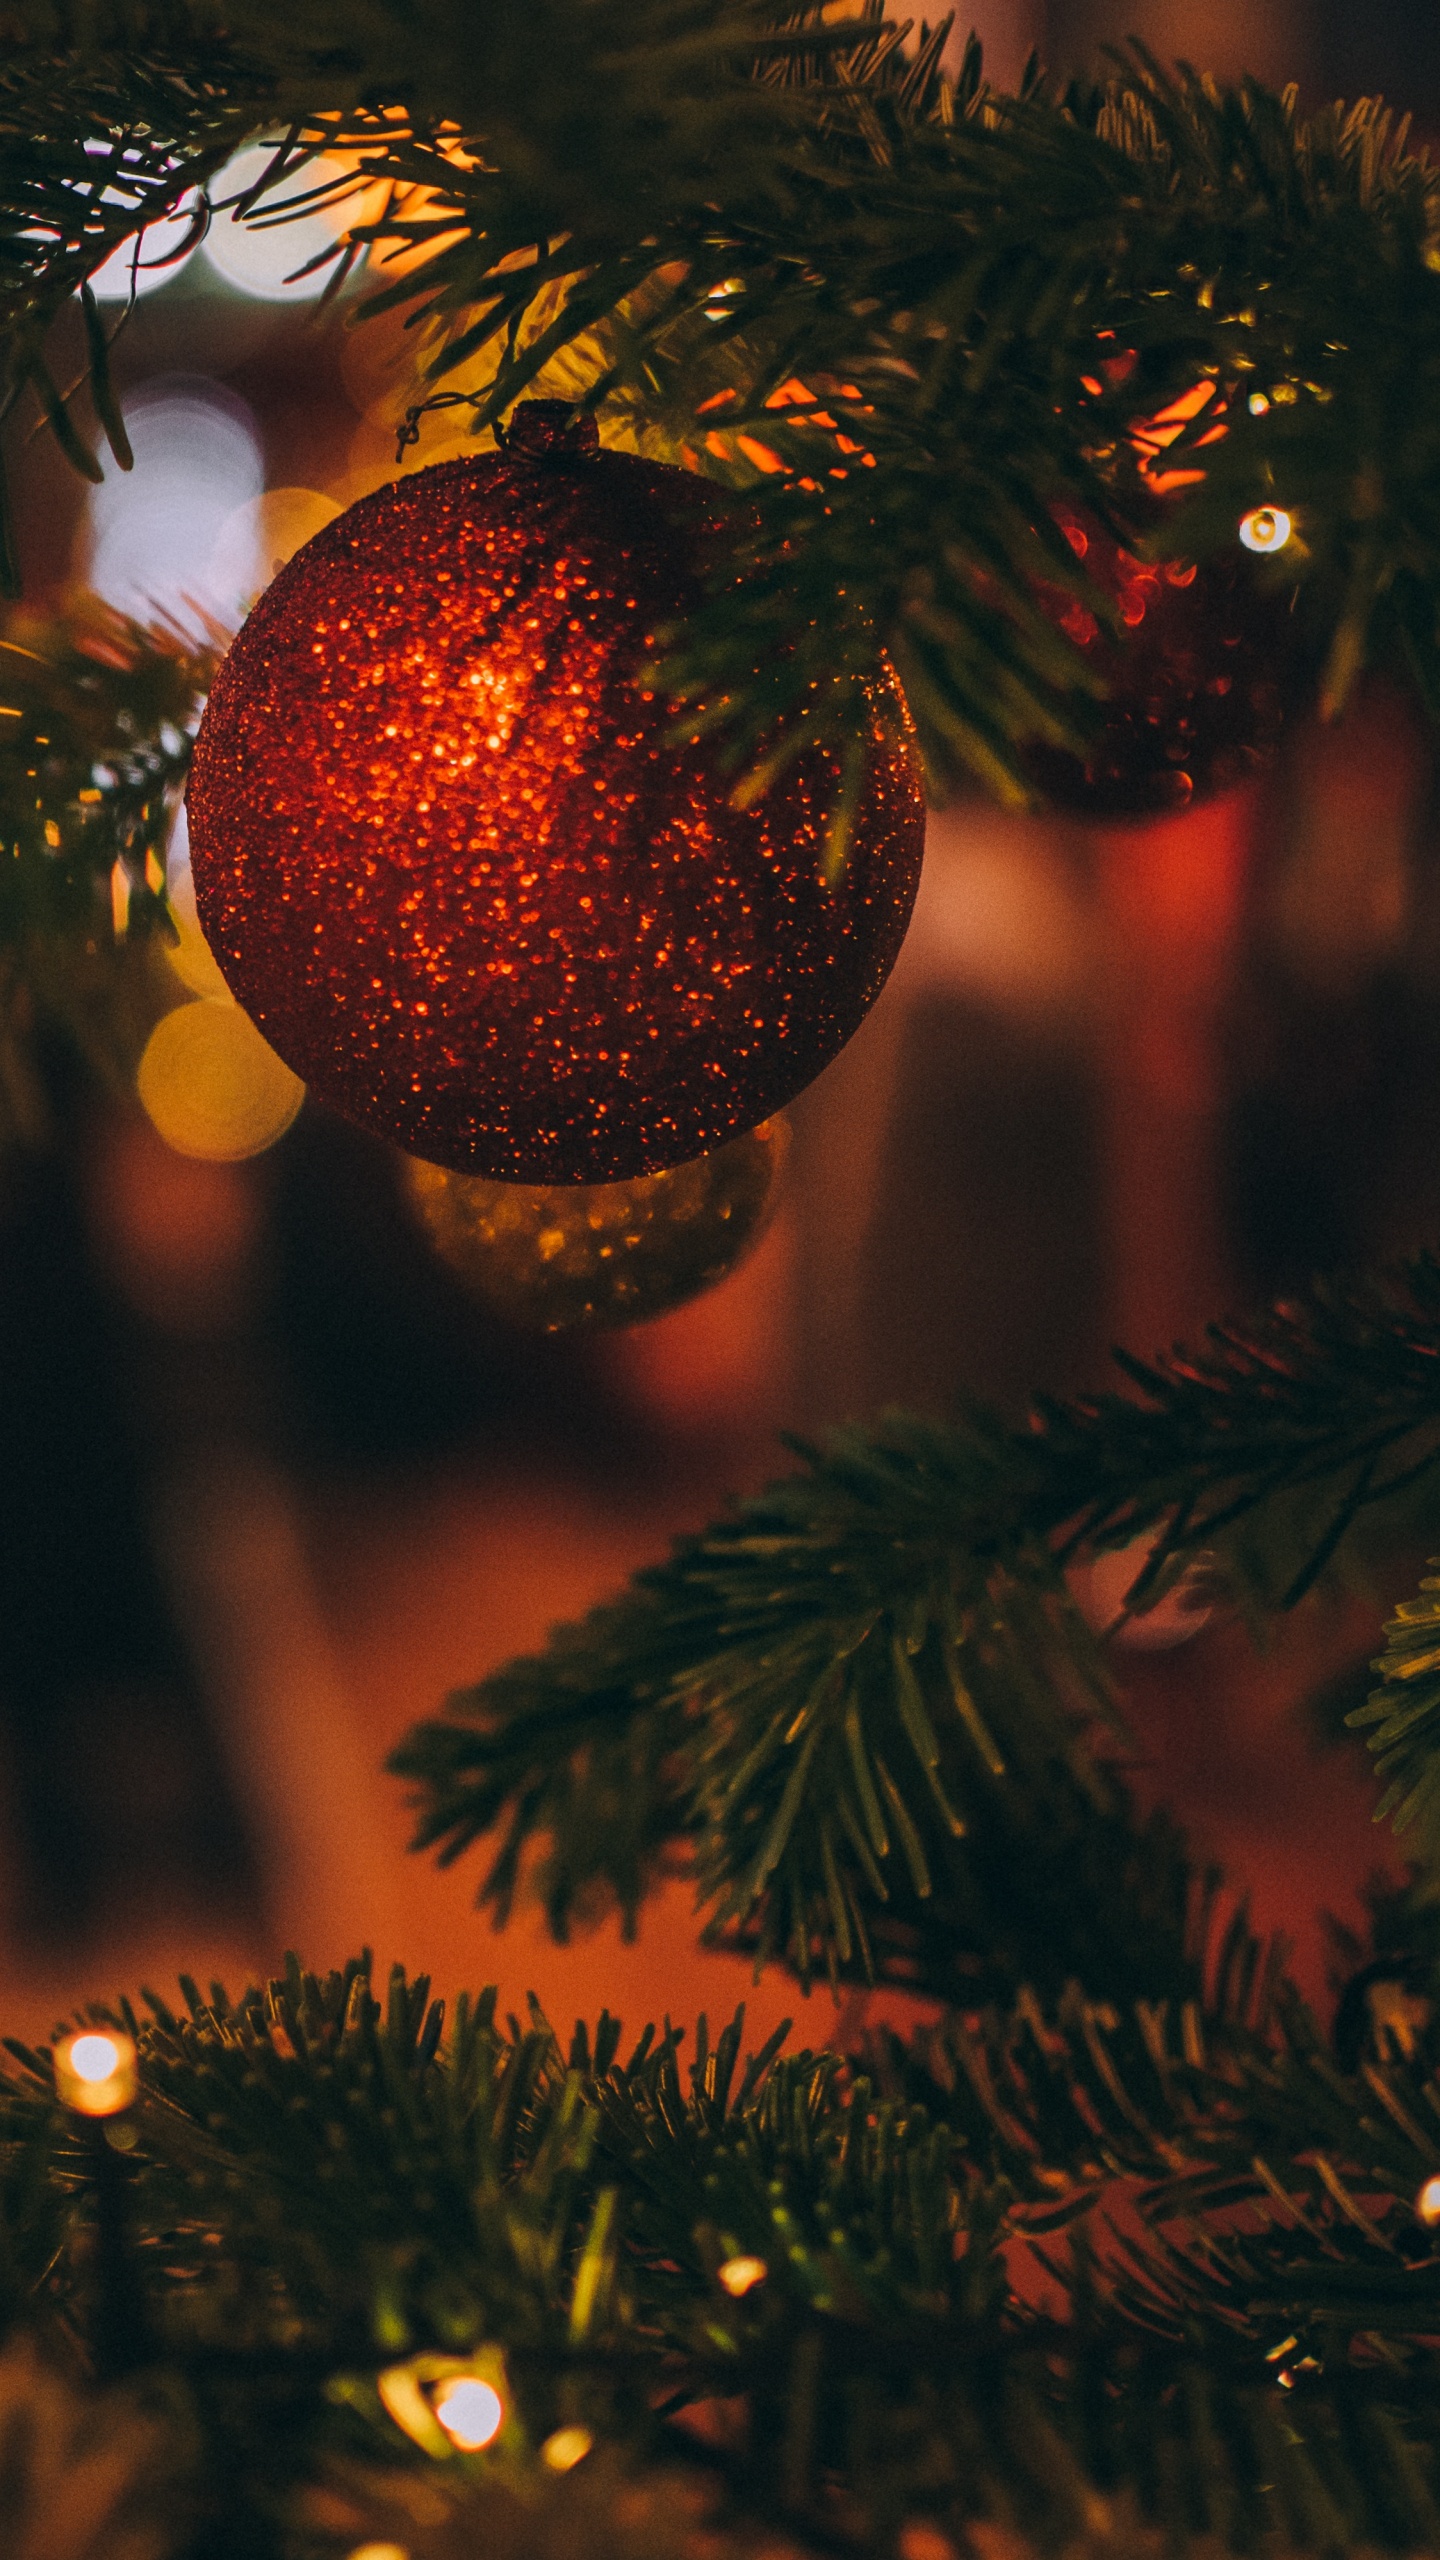 圣诞节那天, 圣诞树, 圣诞节的装饰品, 圣诞节, 云杉 壁纸 1440x2560 允许